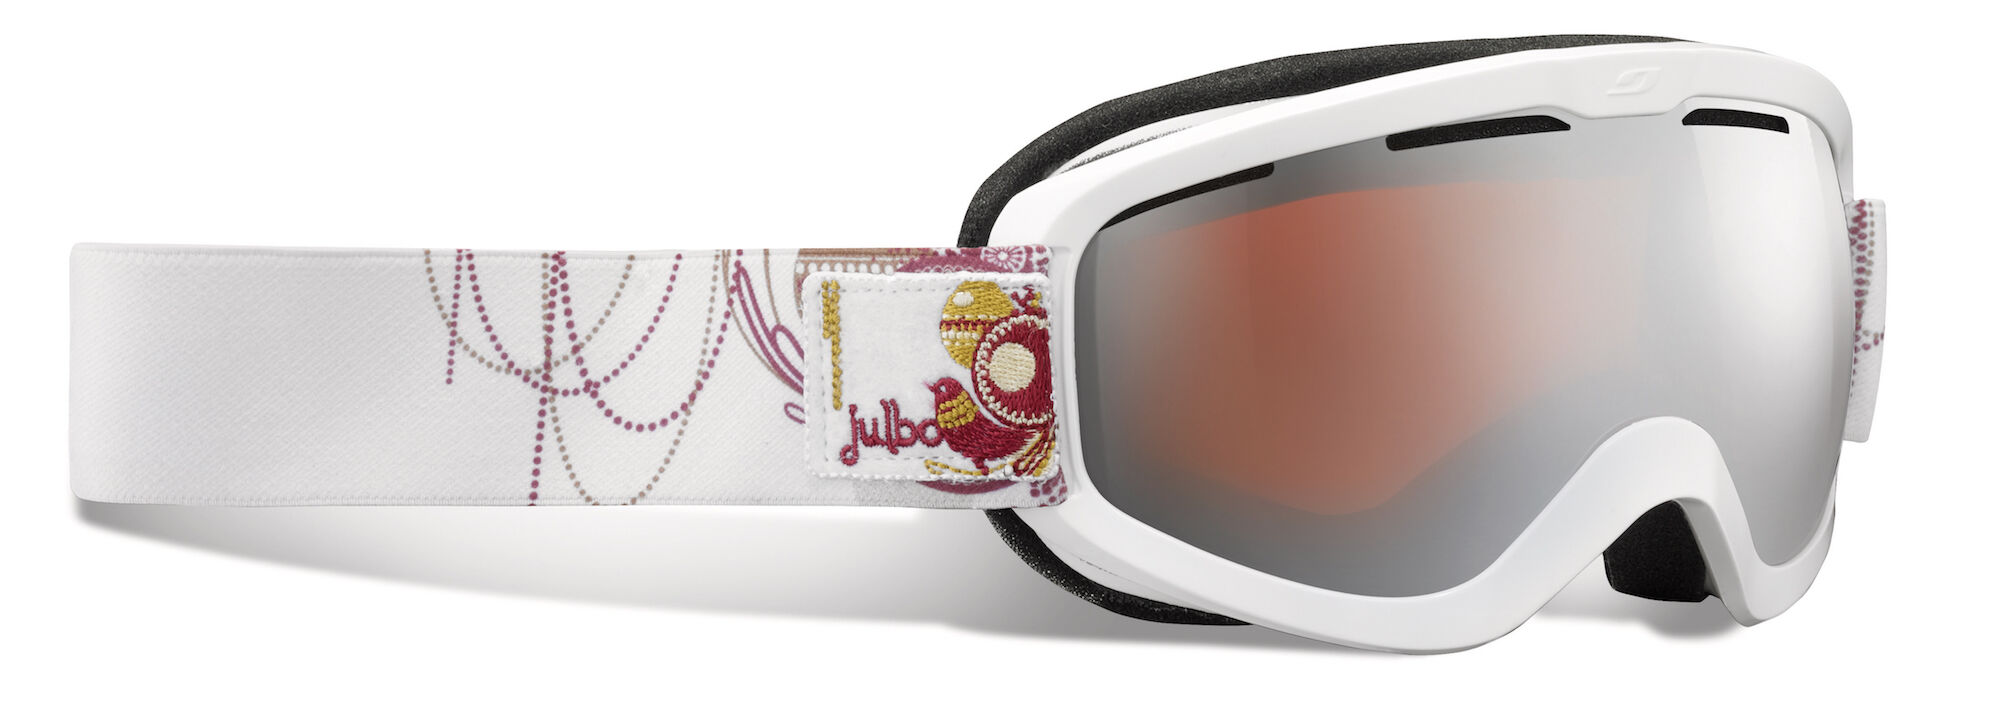 Julbo Vega - Ofertas - Gafas de esquí - Mujer